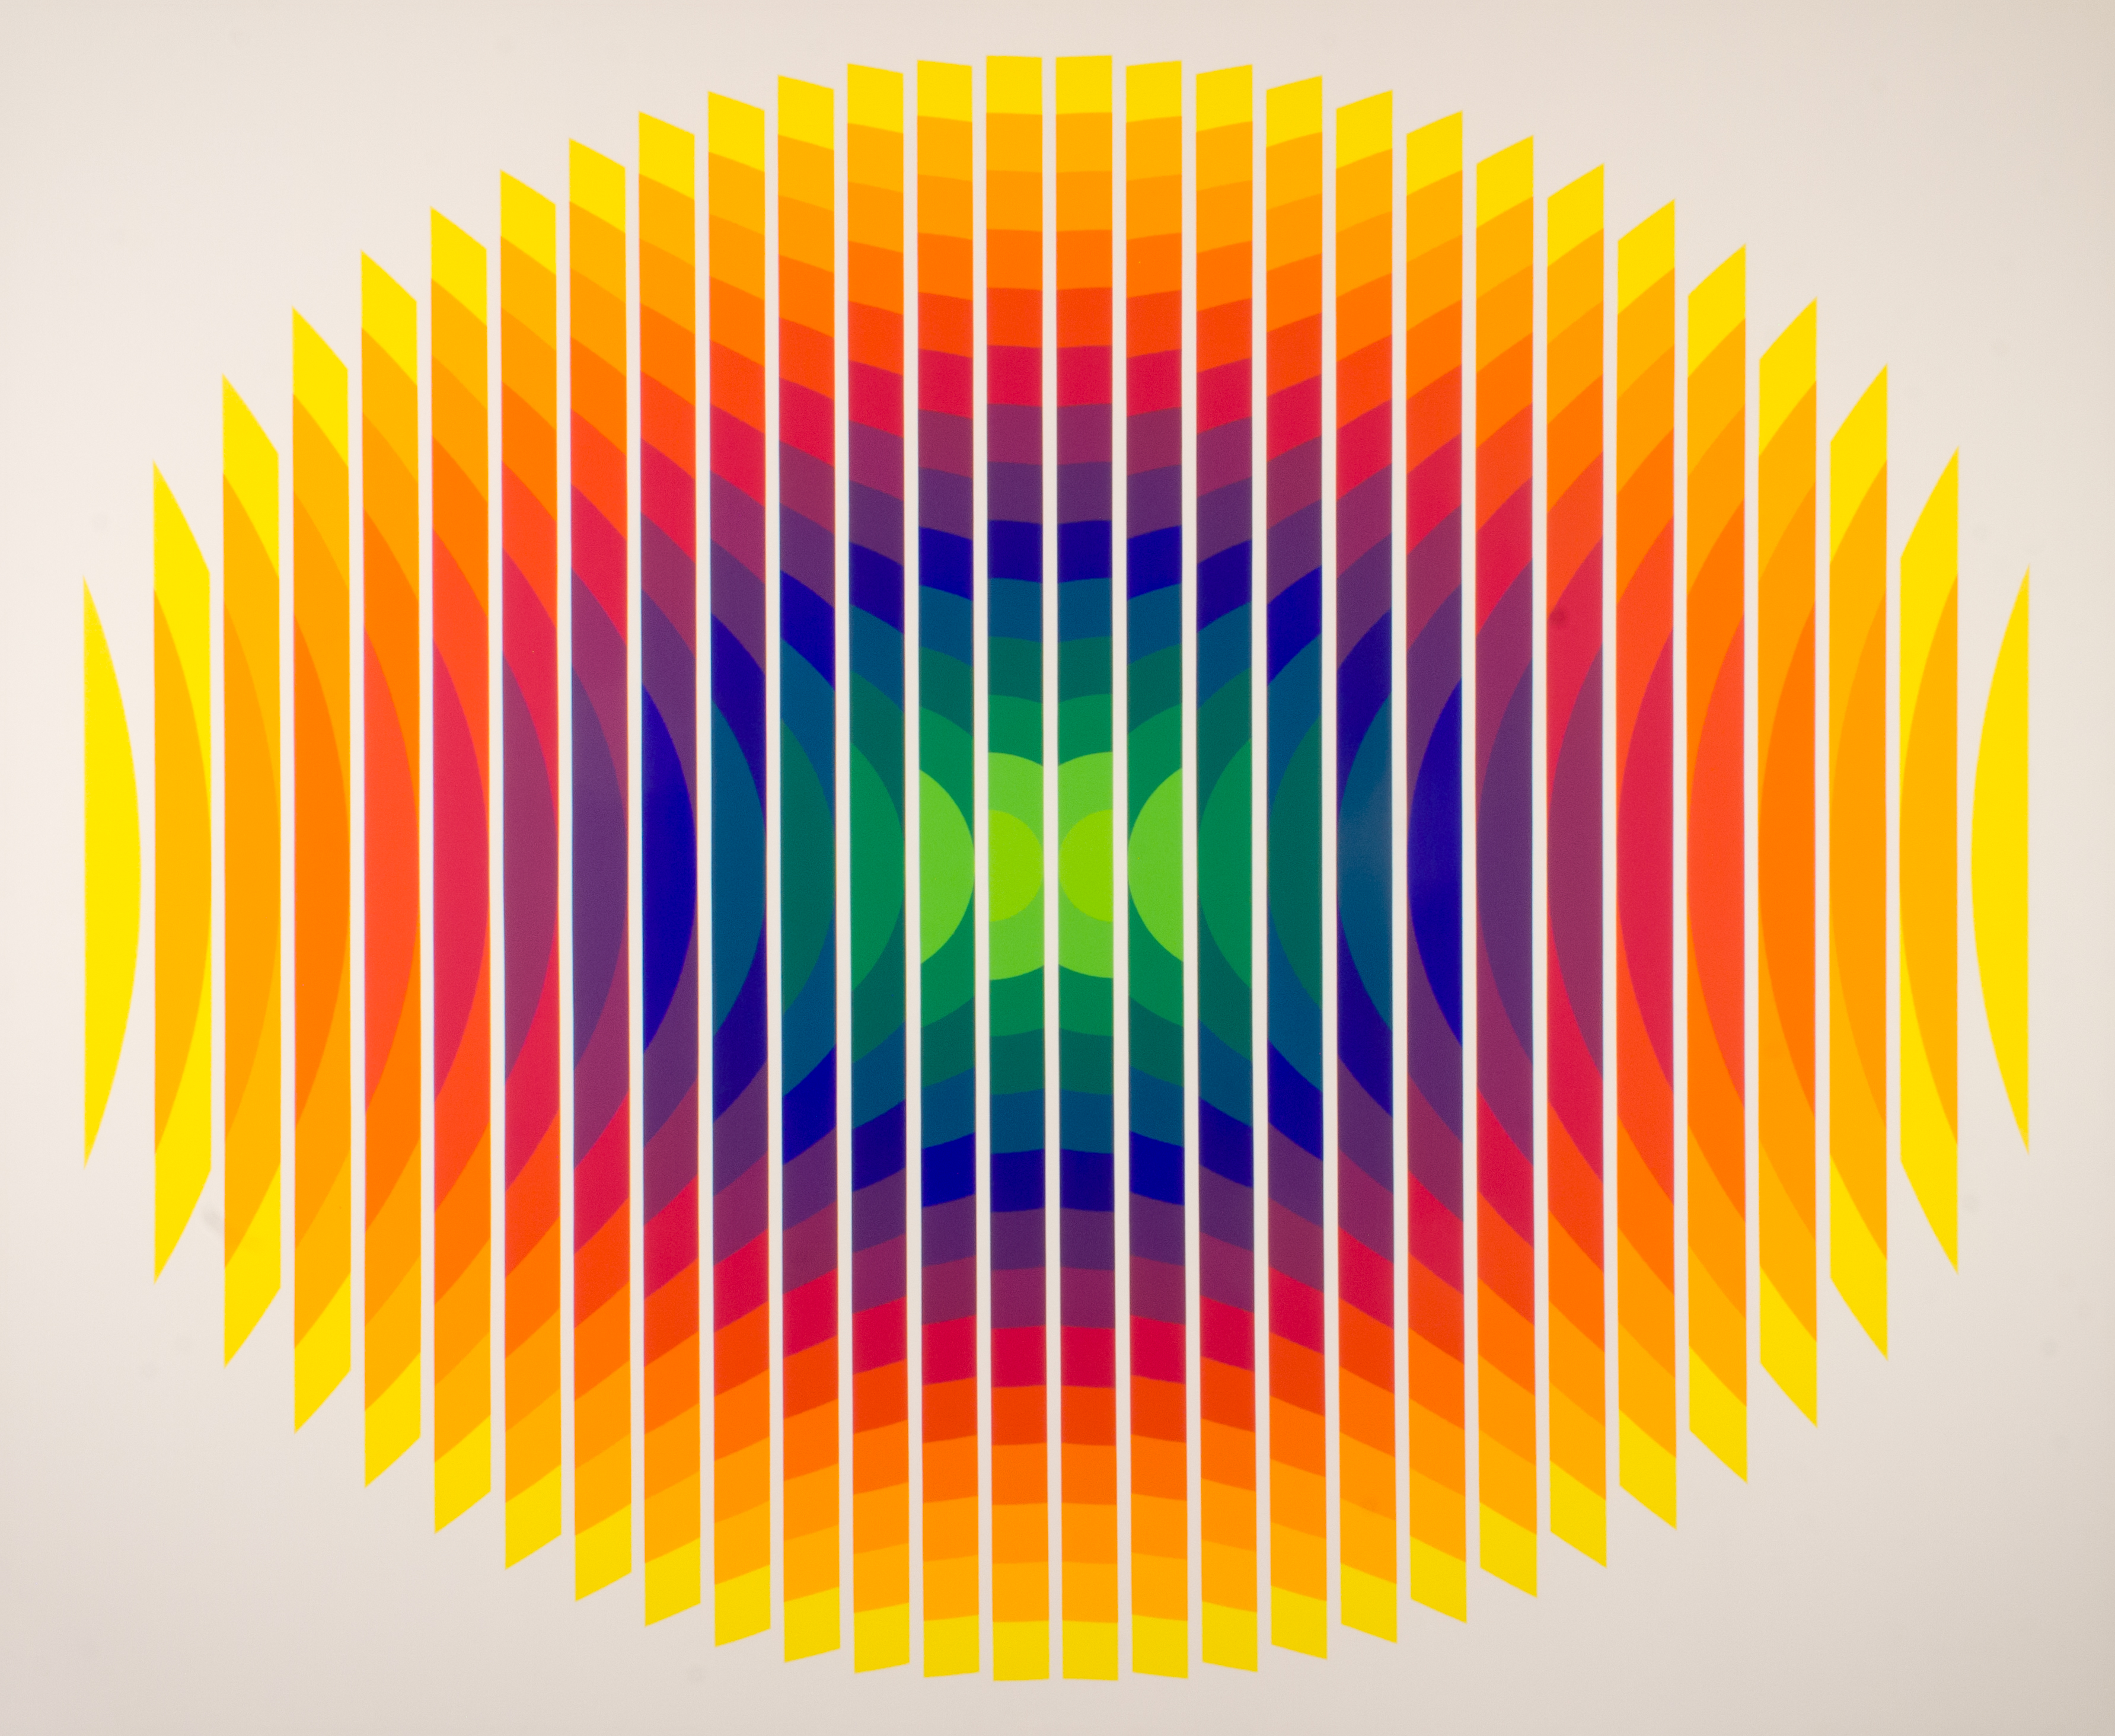 Surface couleur Série 14-2 ovale fractionné, Julio Le Parc